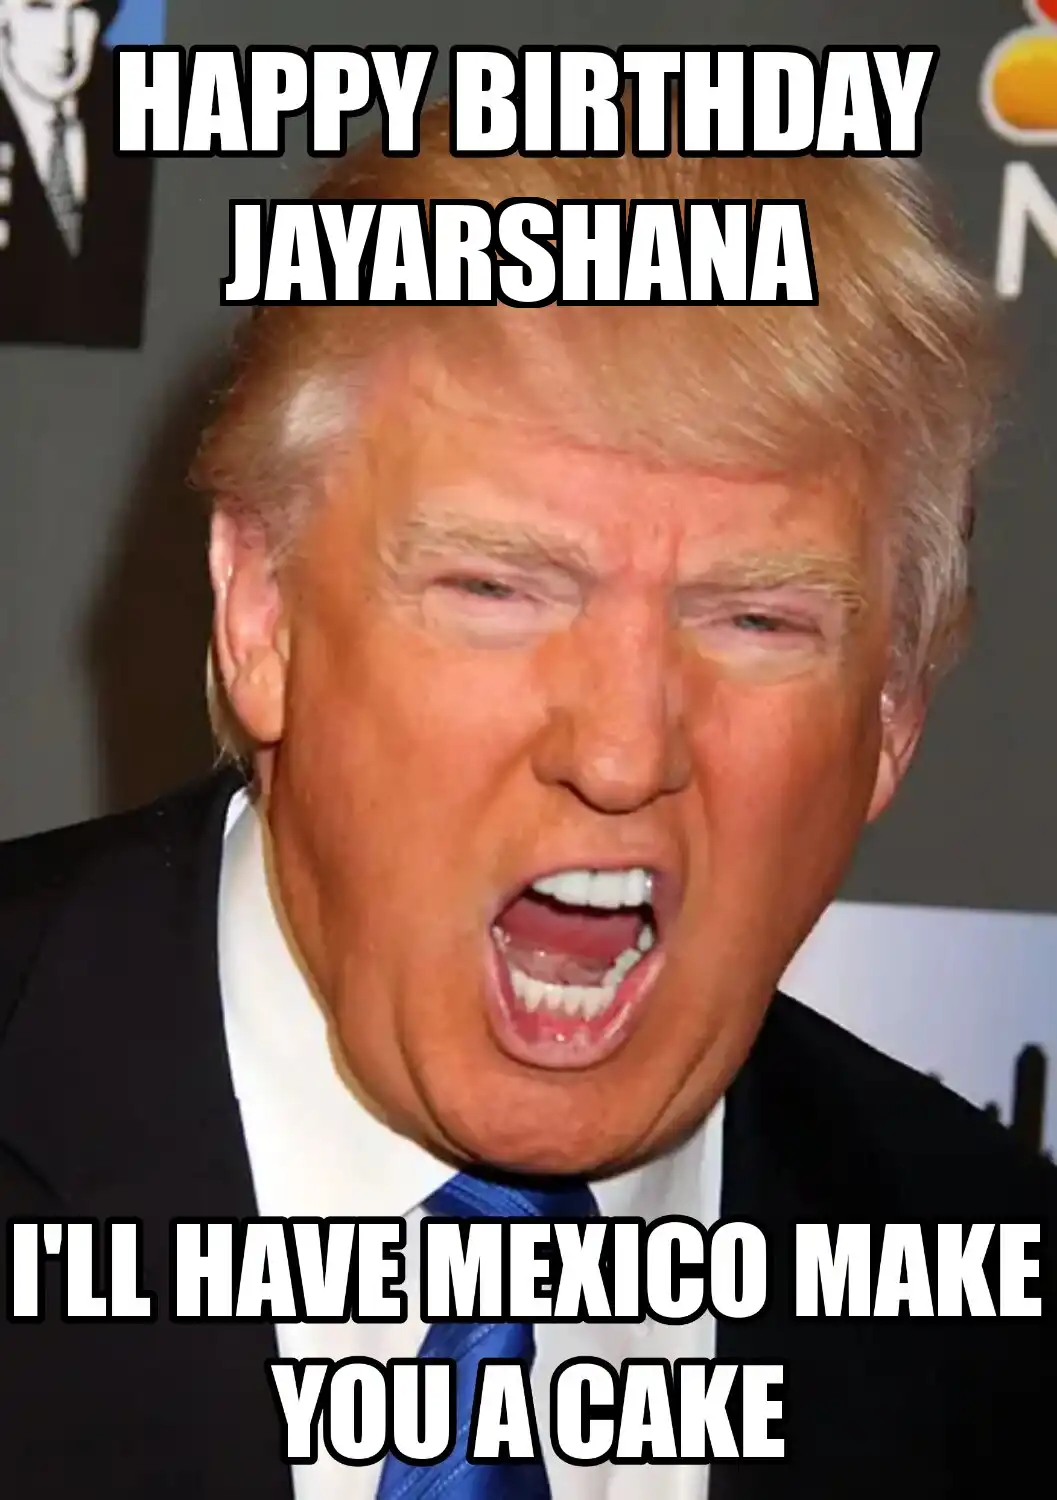 Happy Birthday Jayarshana Mexico Make You A Cake Meme